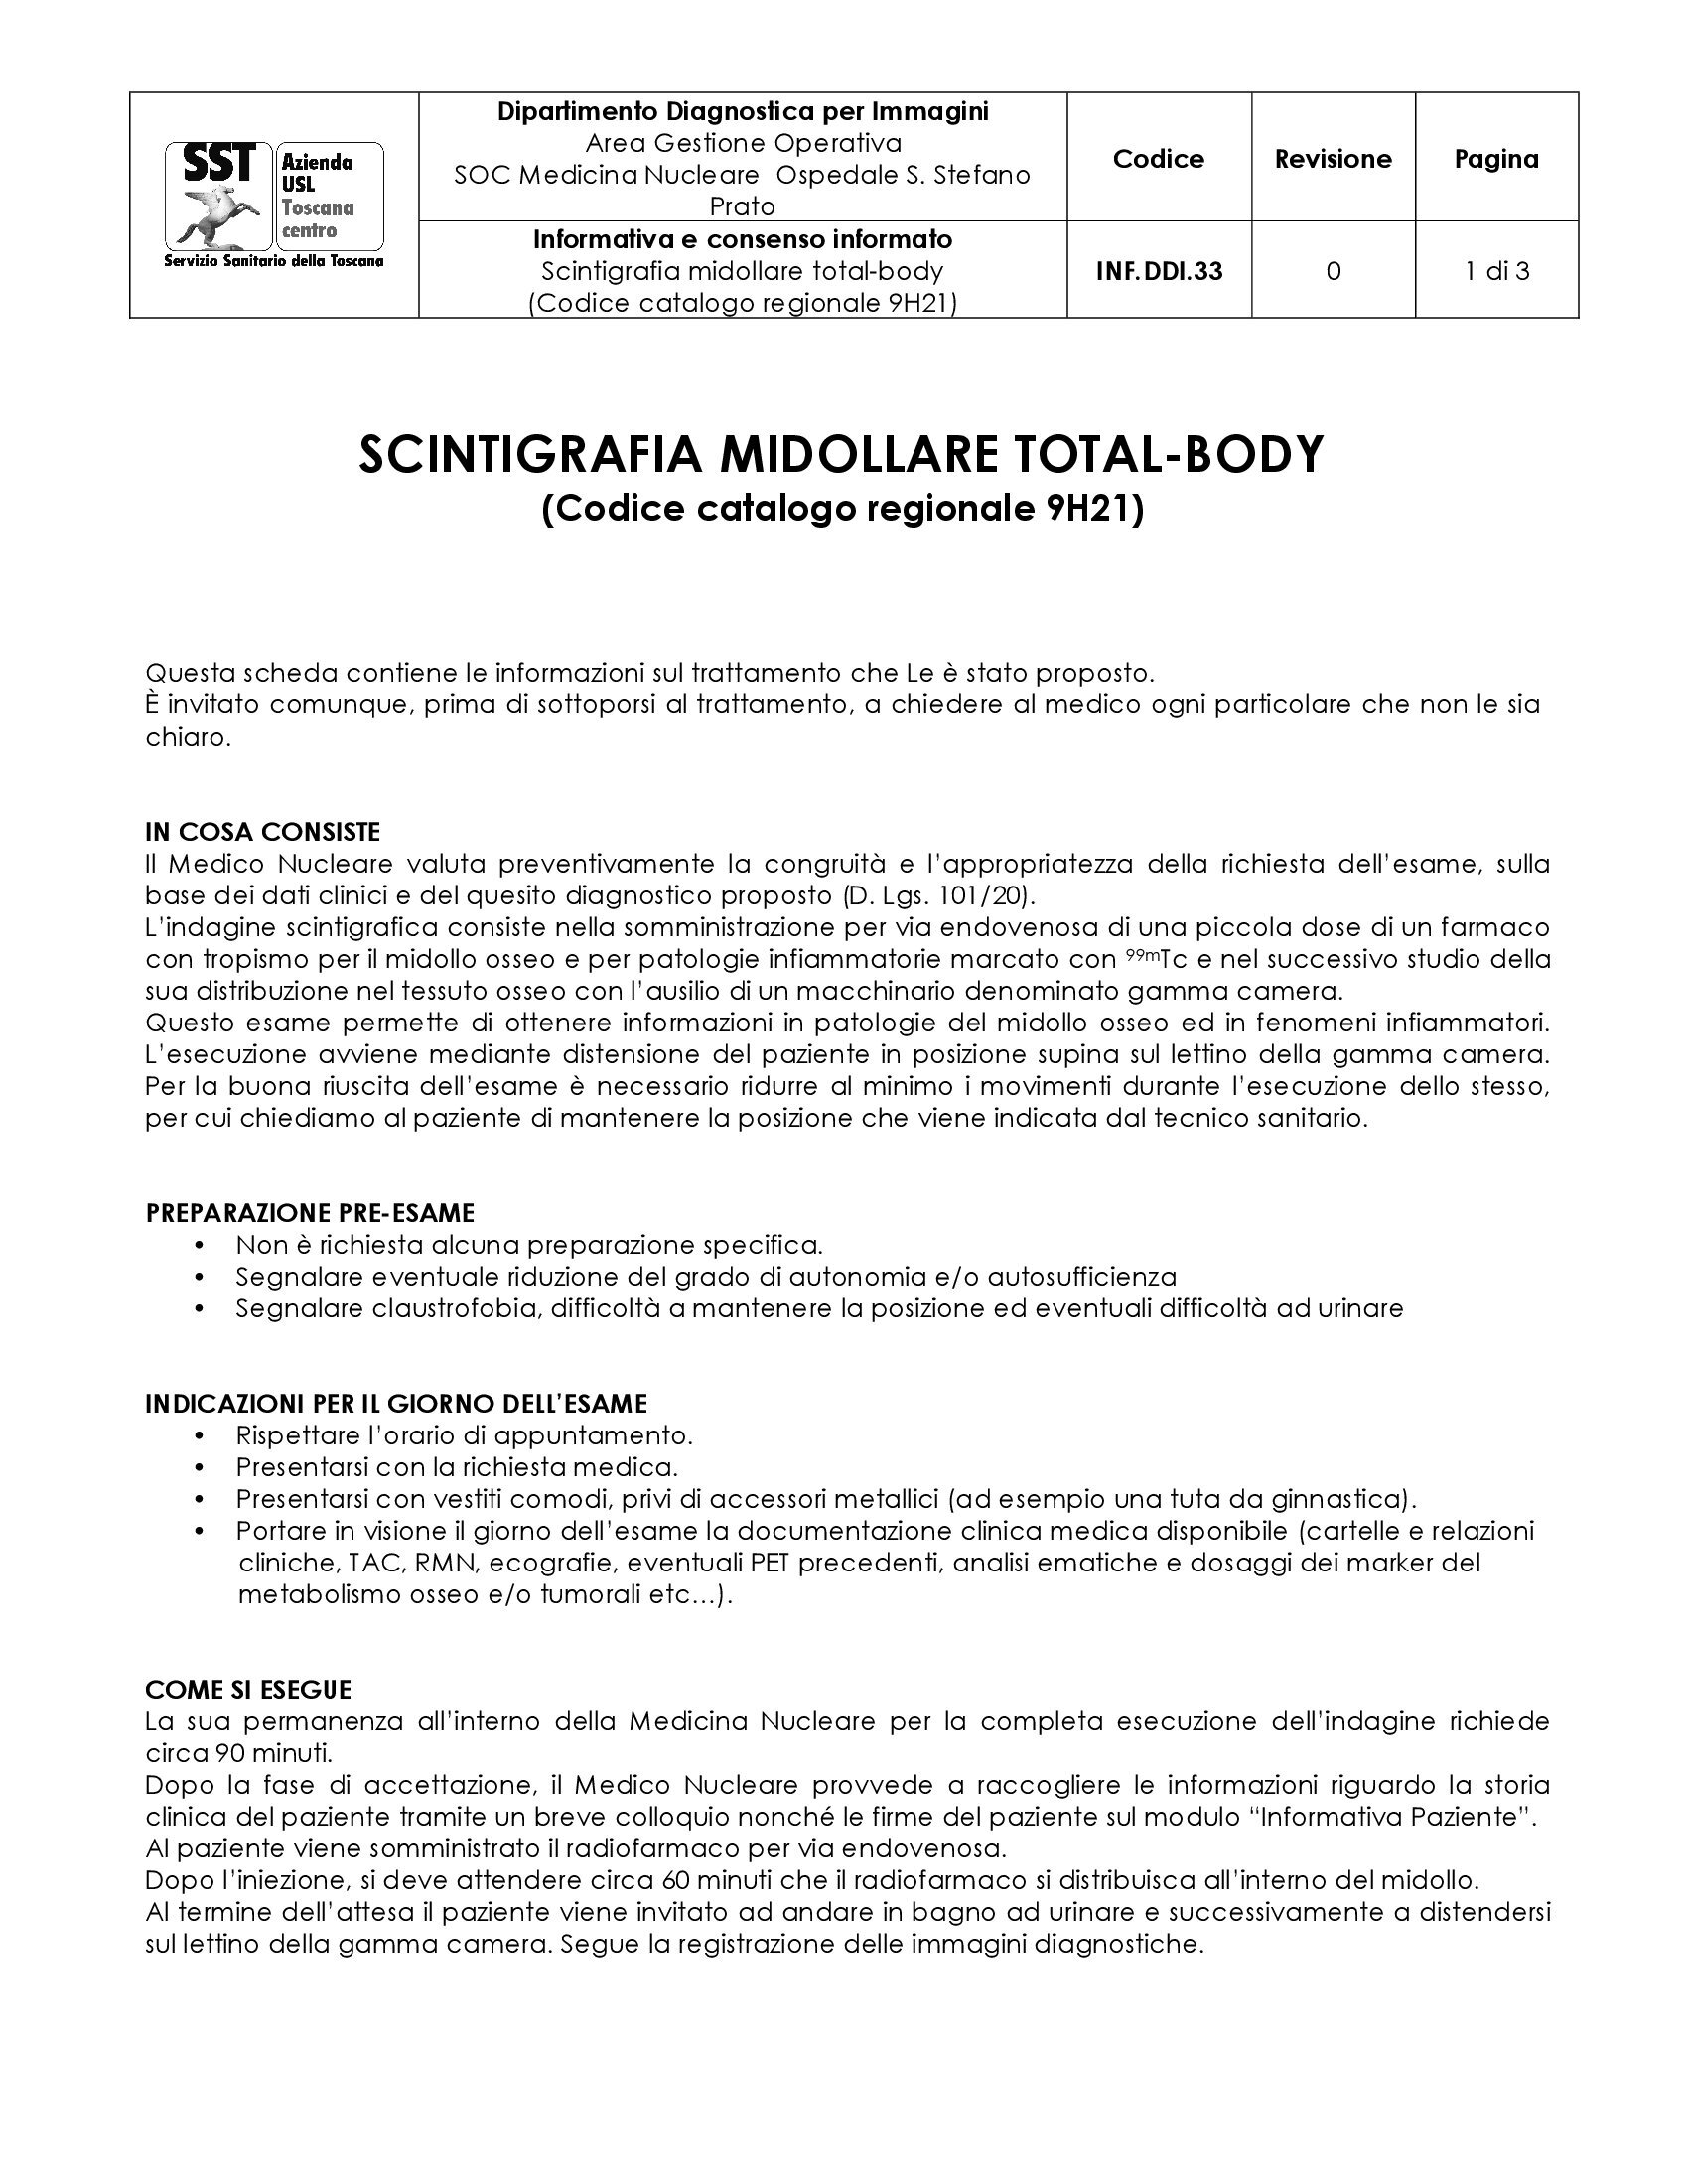 INF.DDI.33 Scintigrafia midollare total-body (Codice catalogo regionale 9H21)